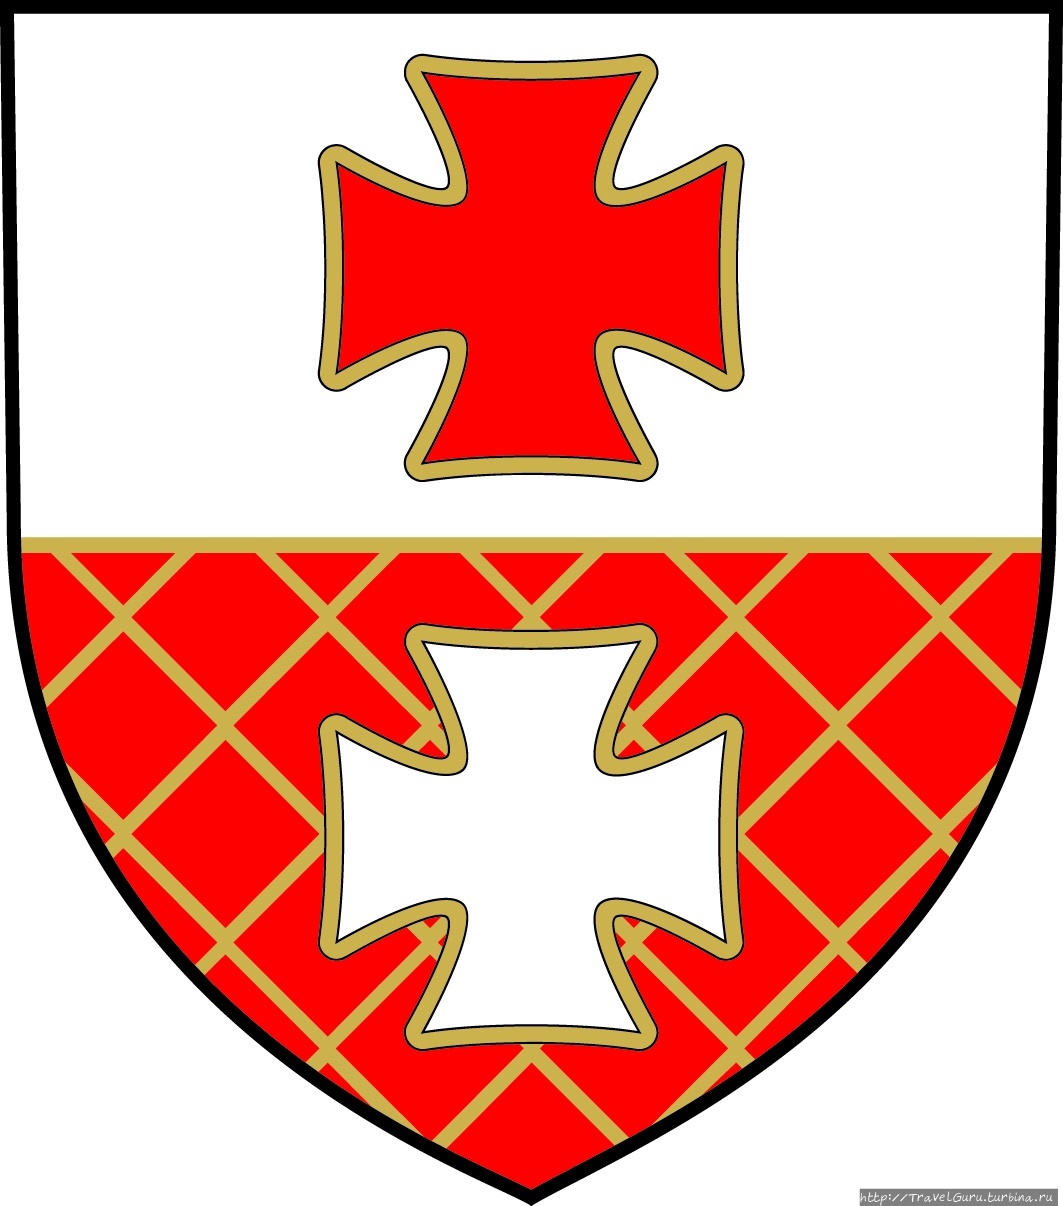 Герб города с символами к